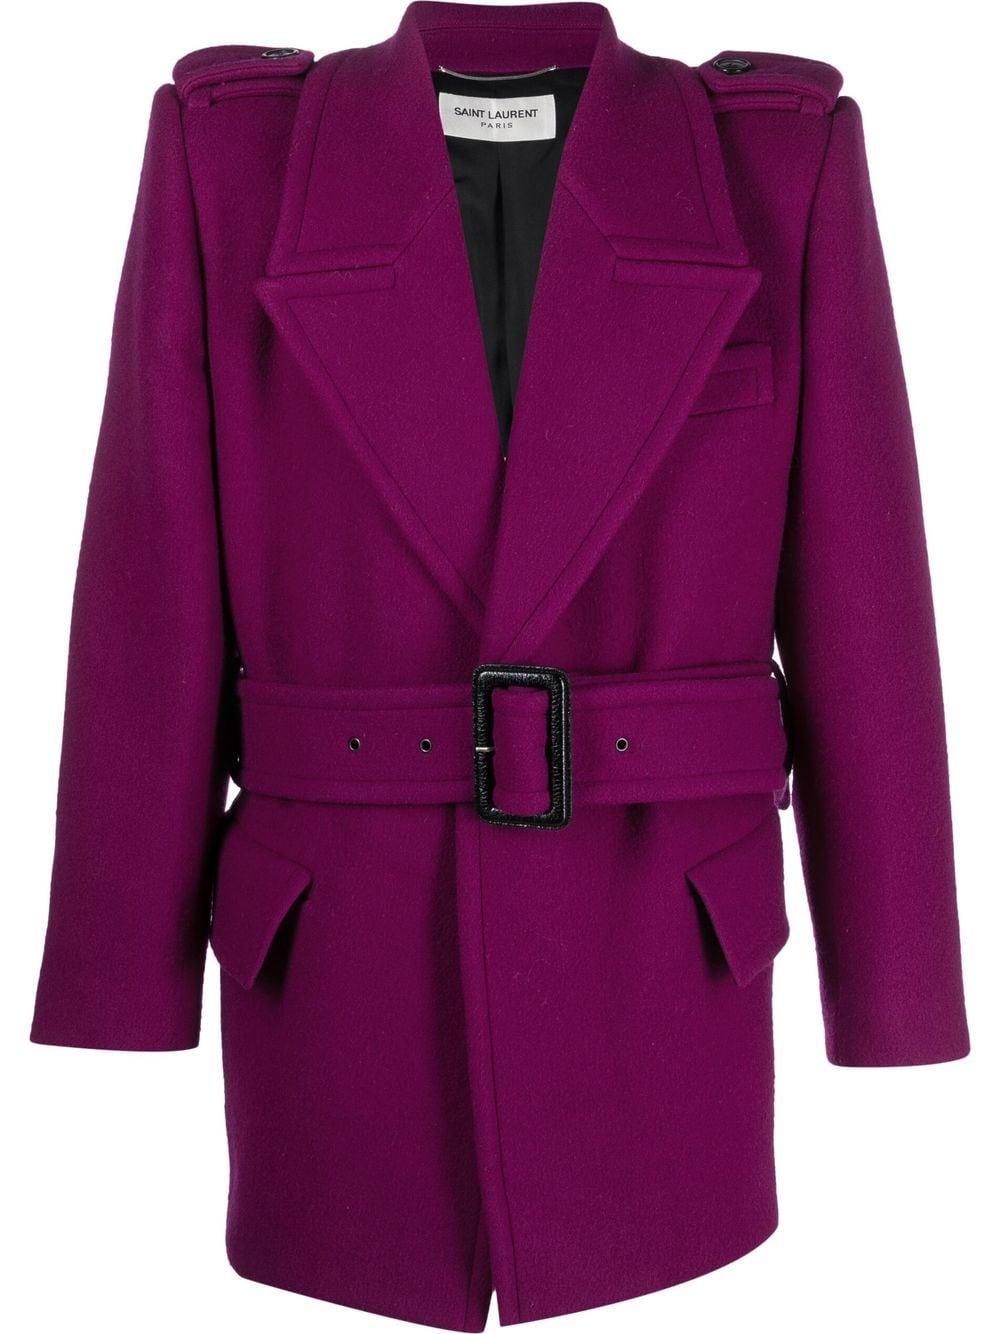 Saint Laurent Manteau Belted Coat in Purple for Men | Lyst